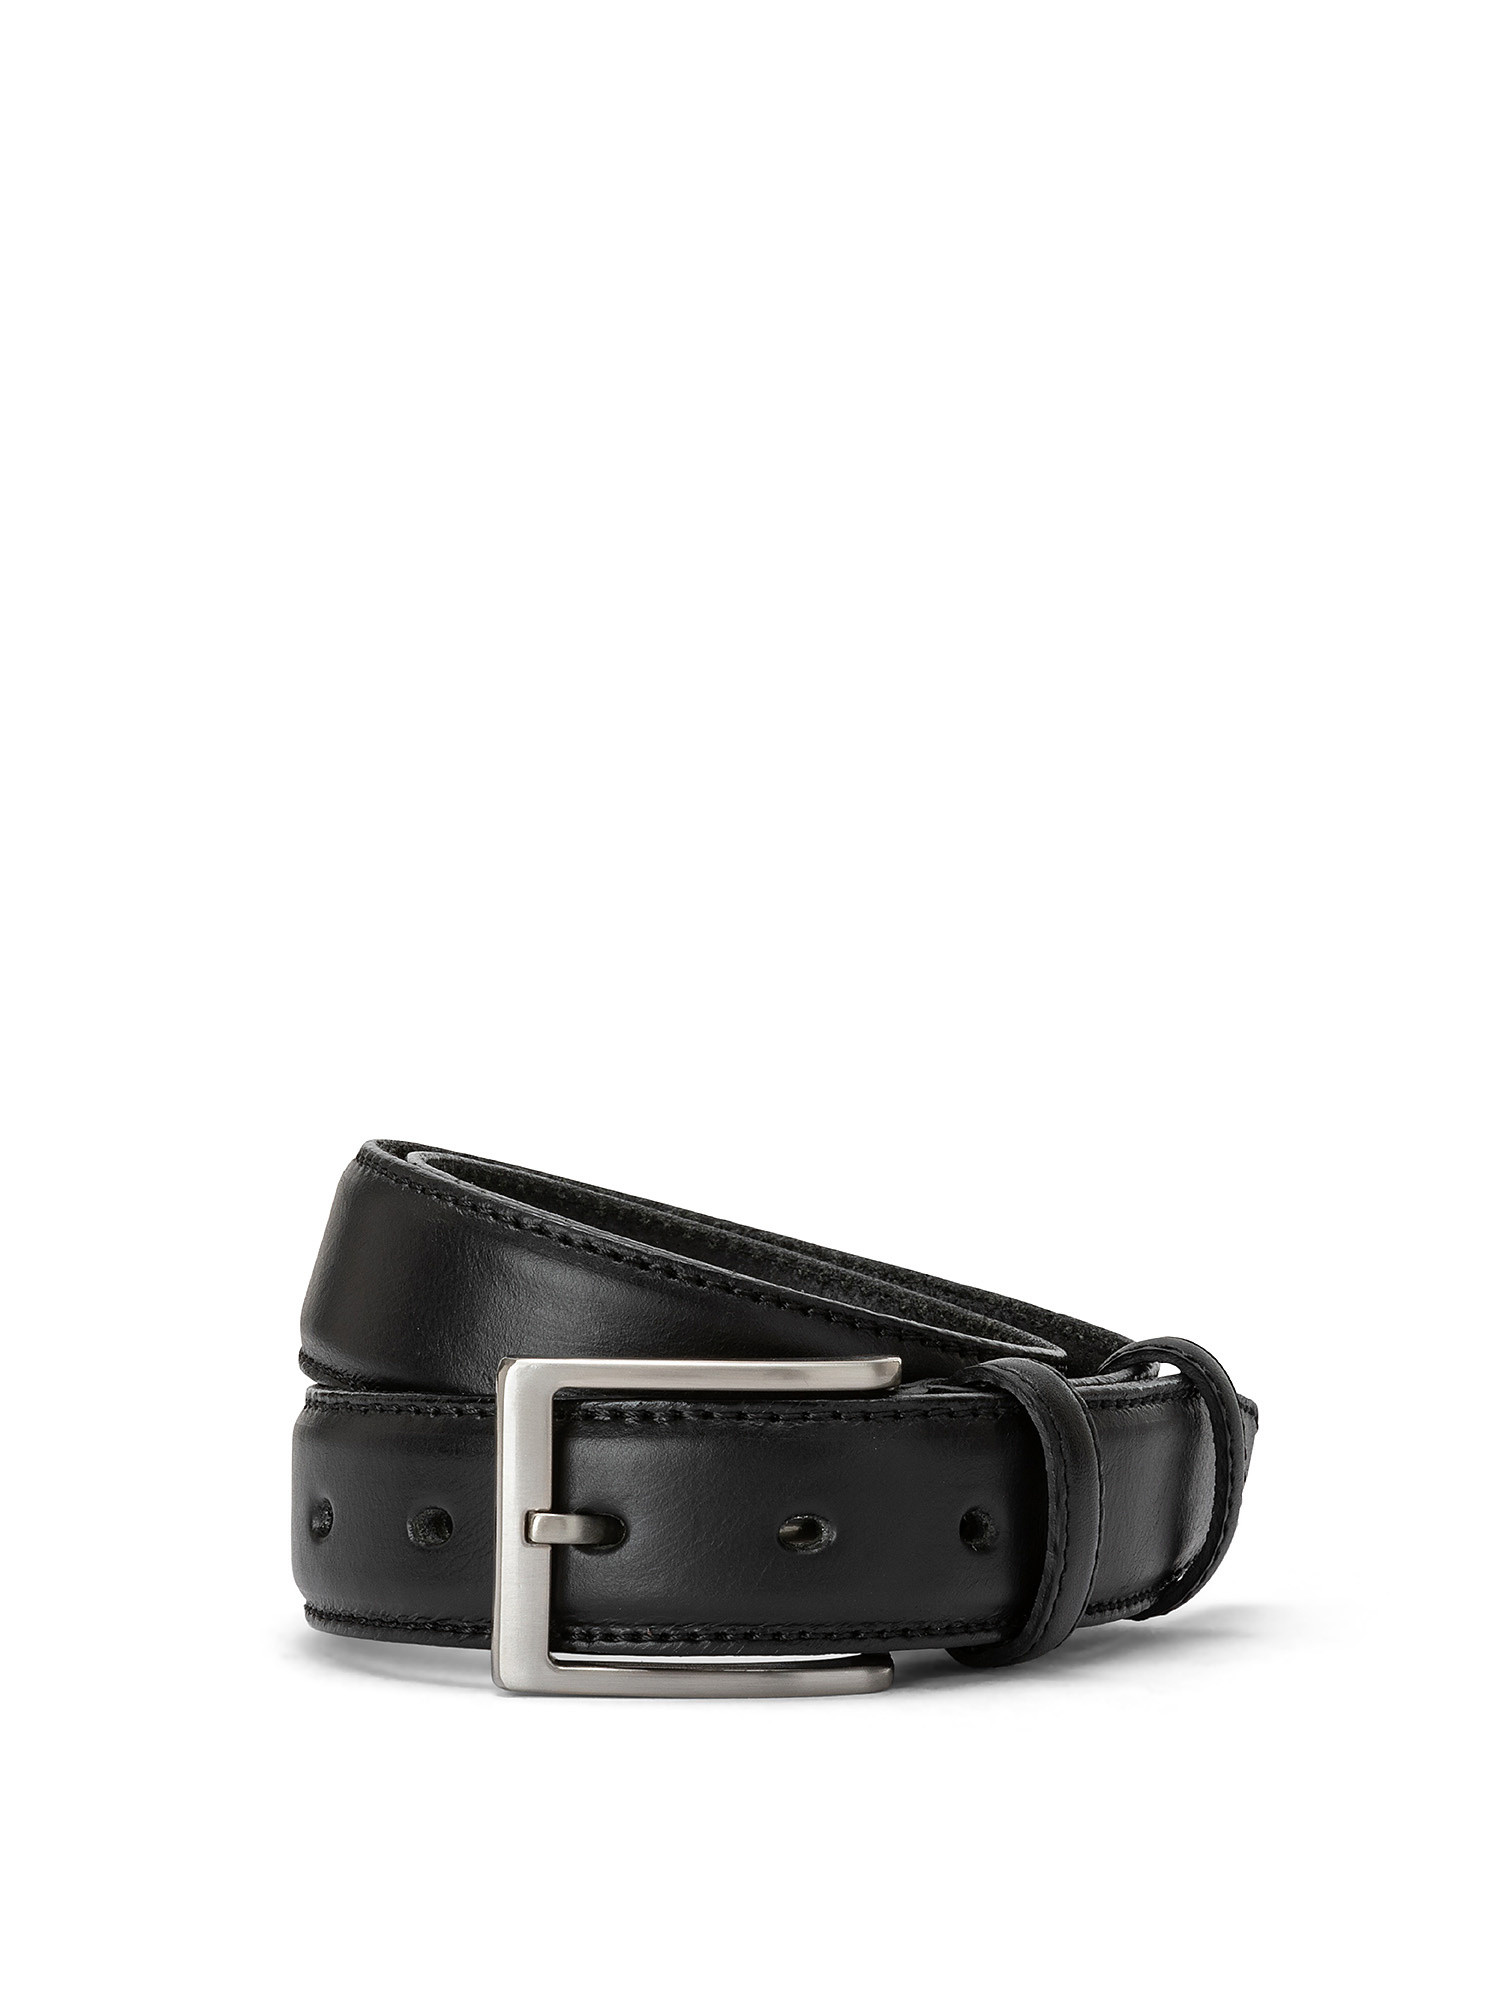 Real-leather belt, Black, large image number 0